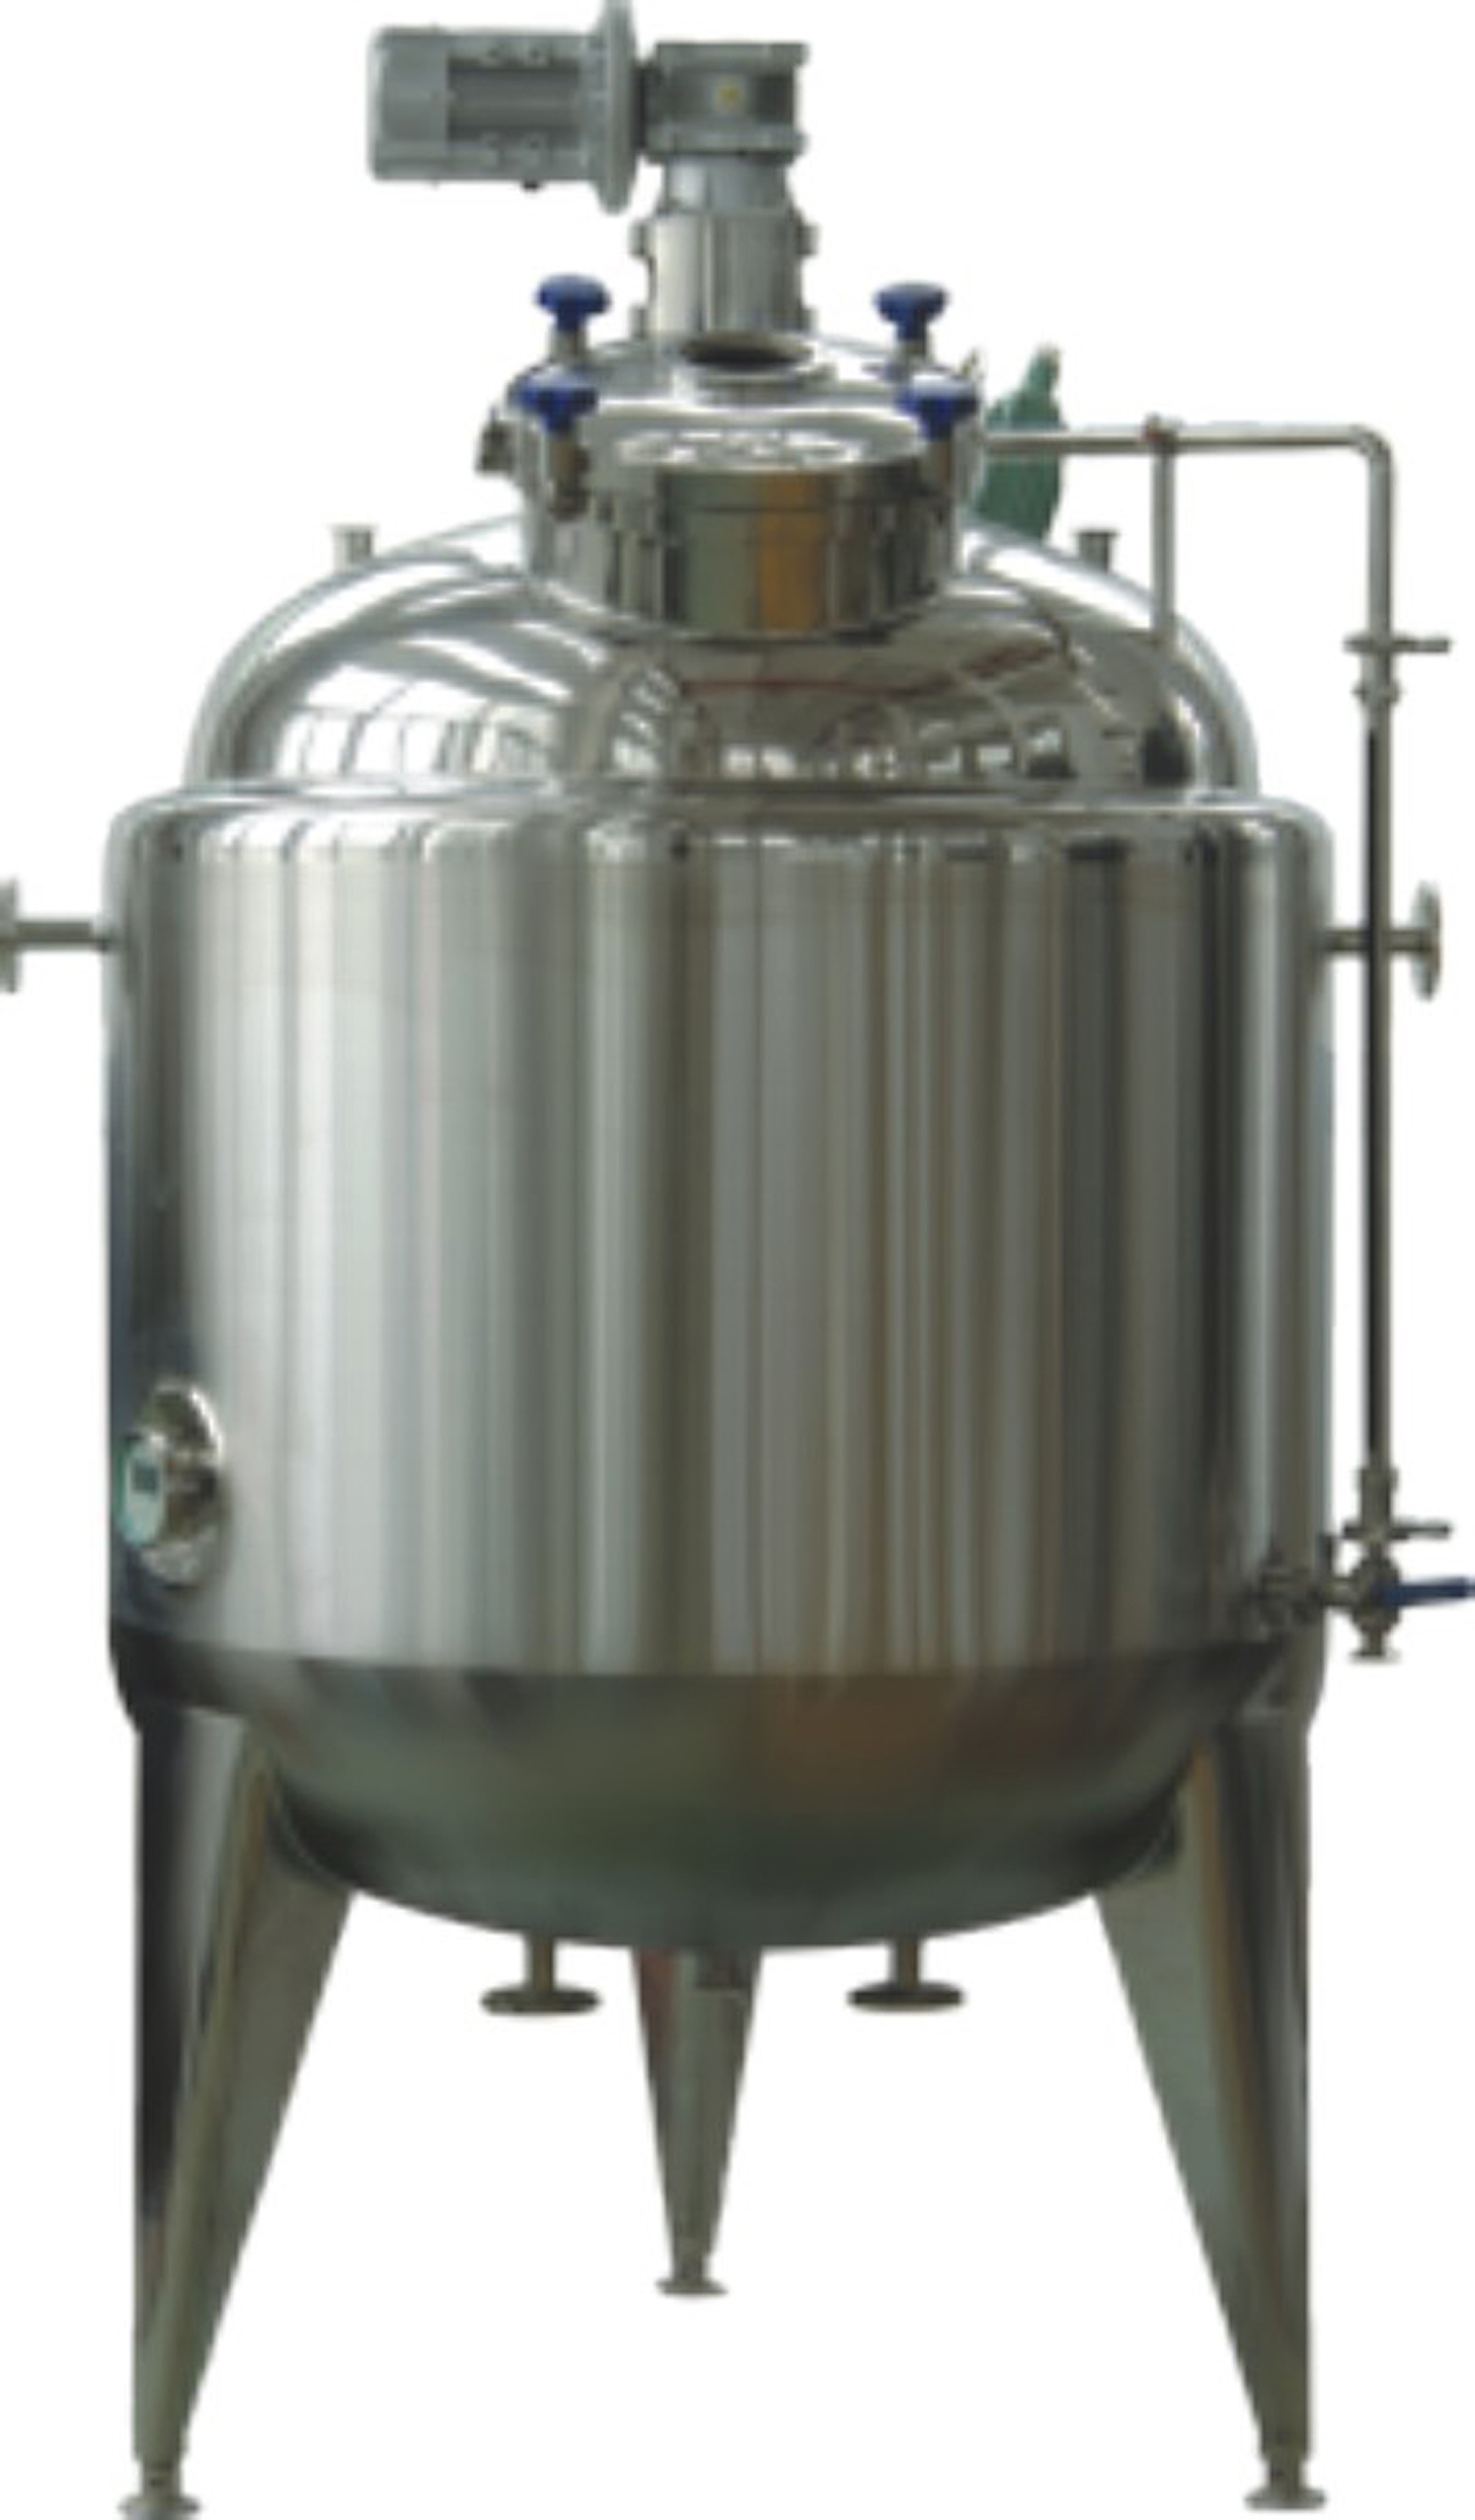 IC-100配料罐(制药、生物工程、食品专用)